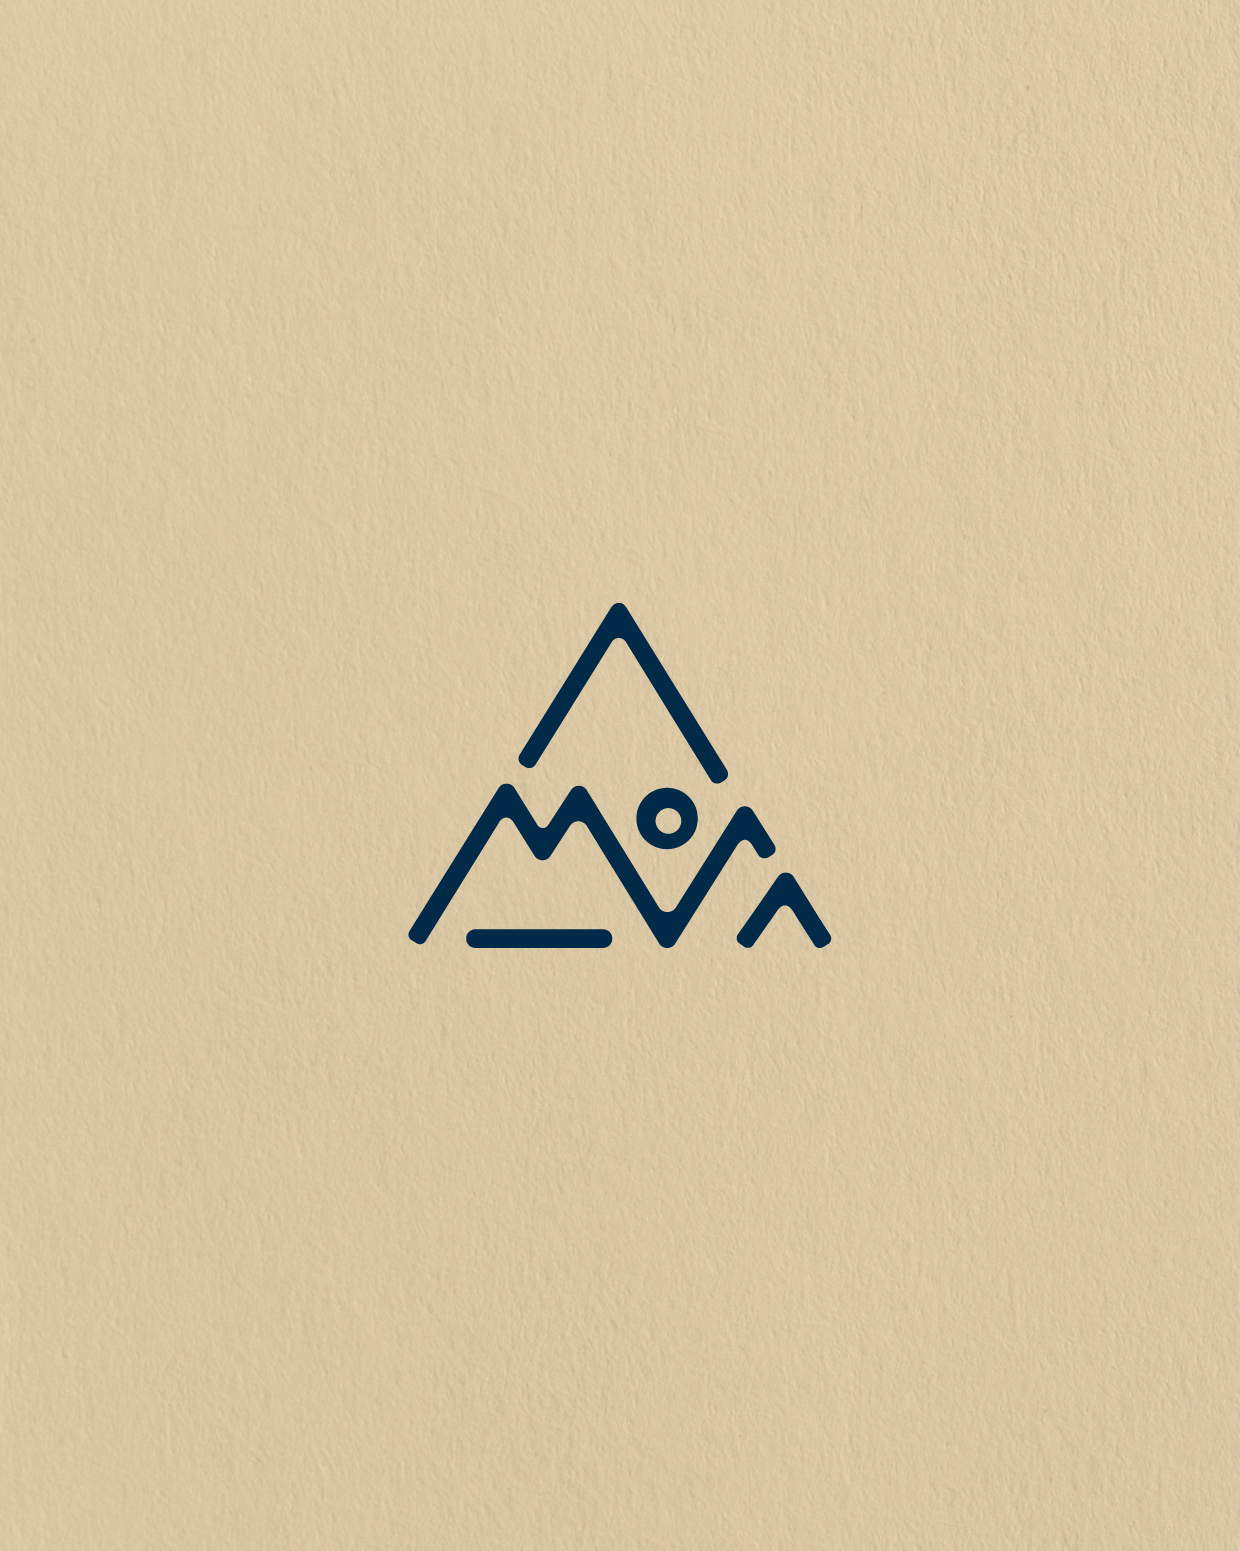 Incon logo design for MOVA outdoor adventure